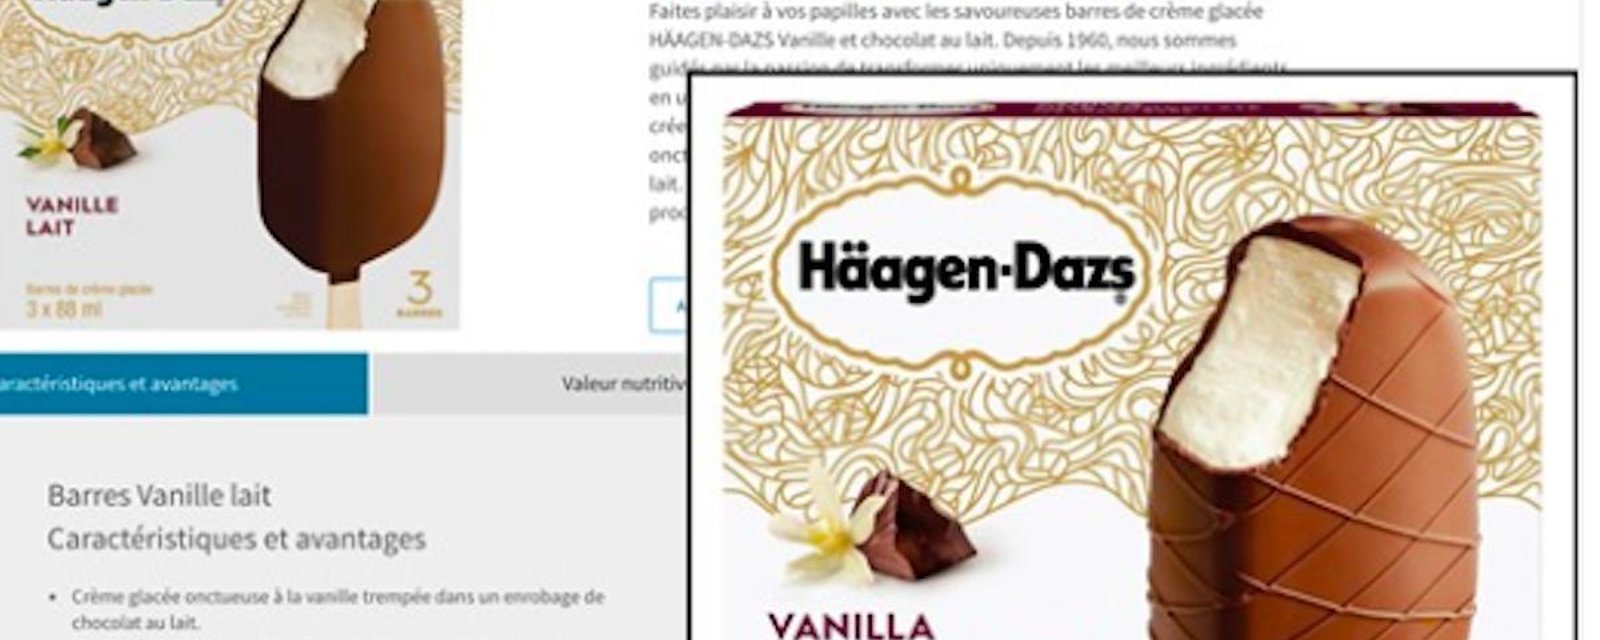 Des barres de crème glacée Häagen-Dazs sans vrai chocolat au lait